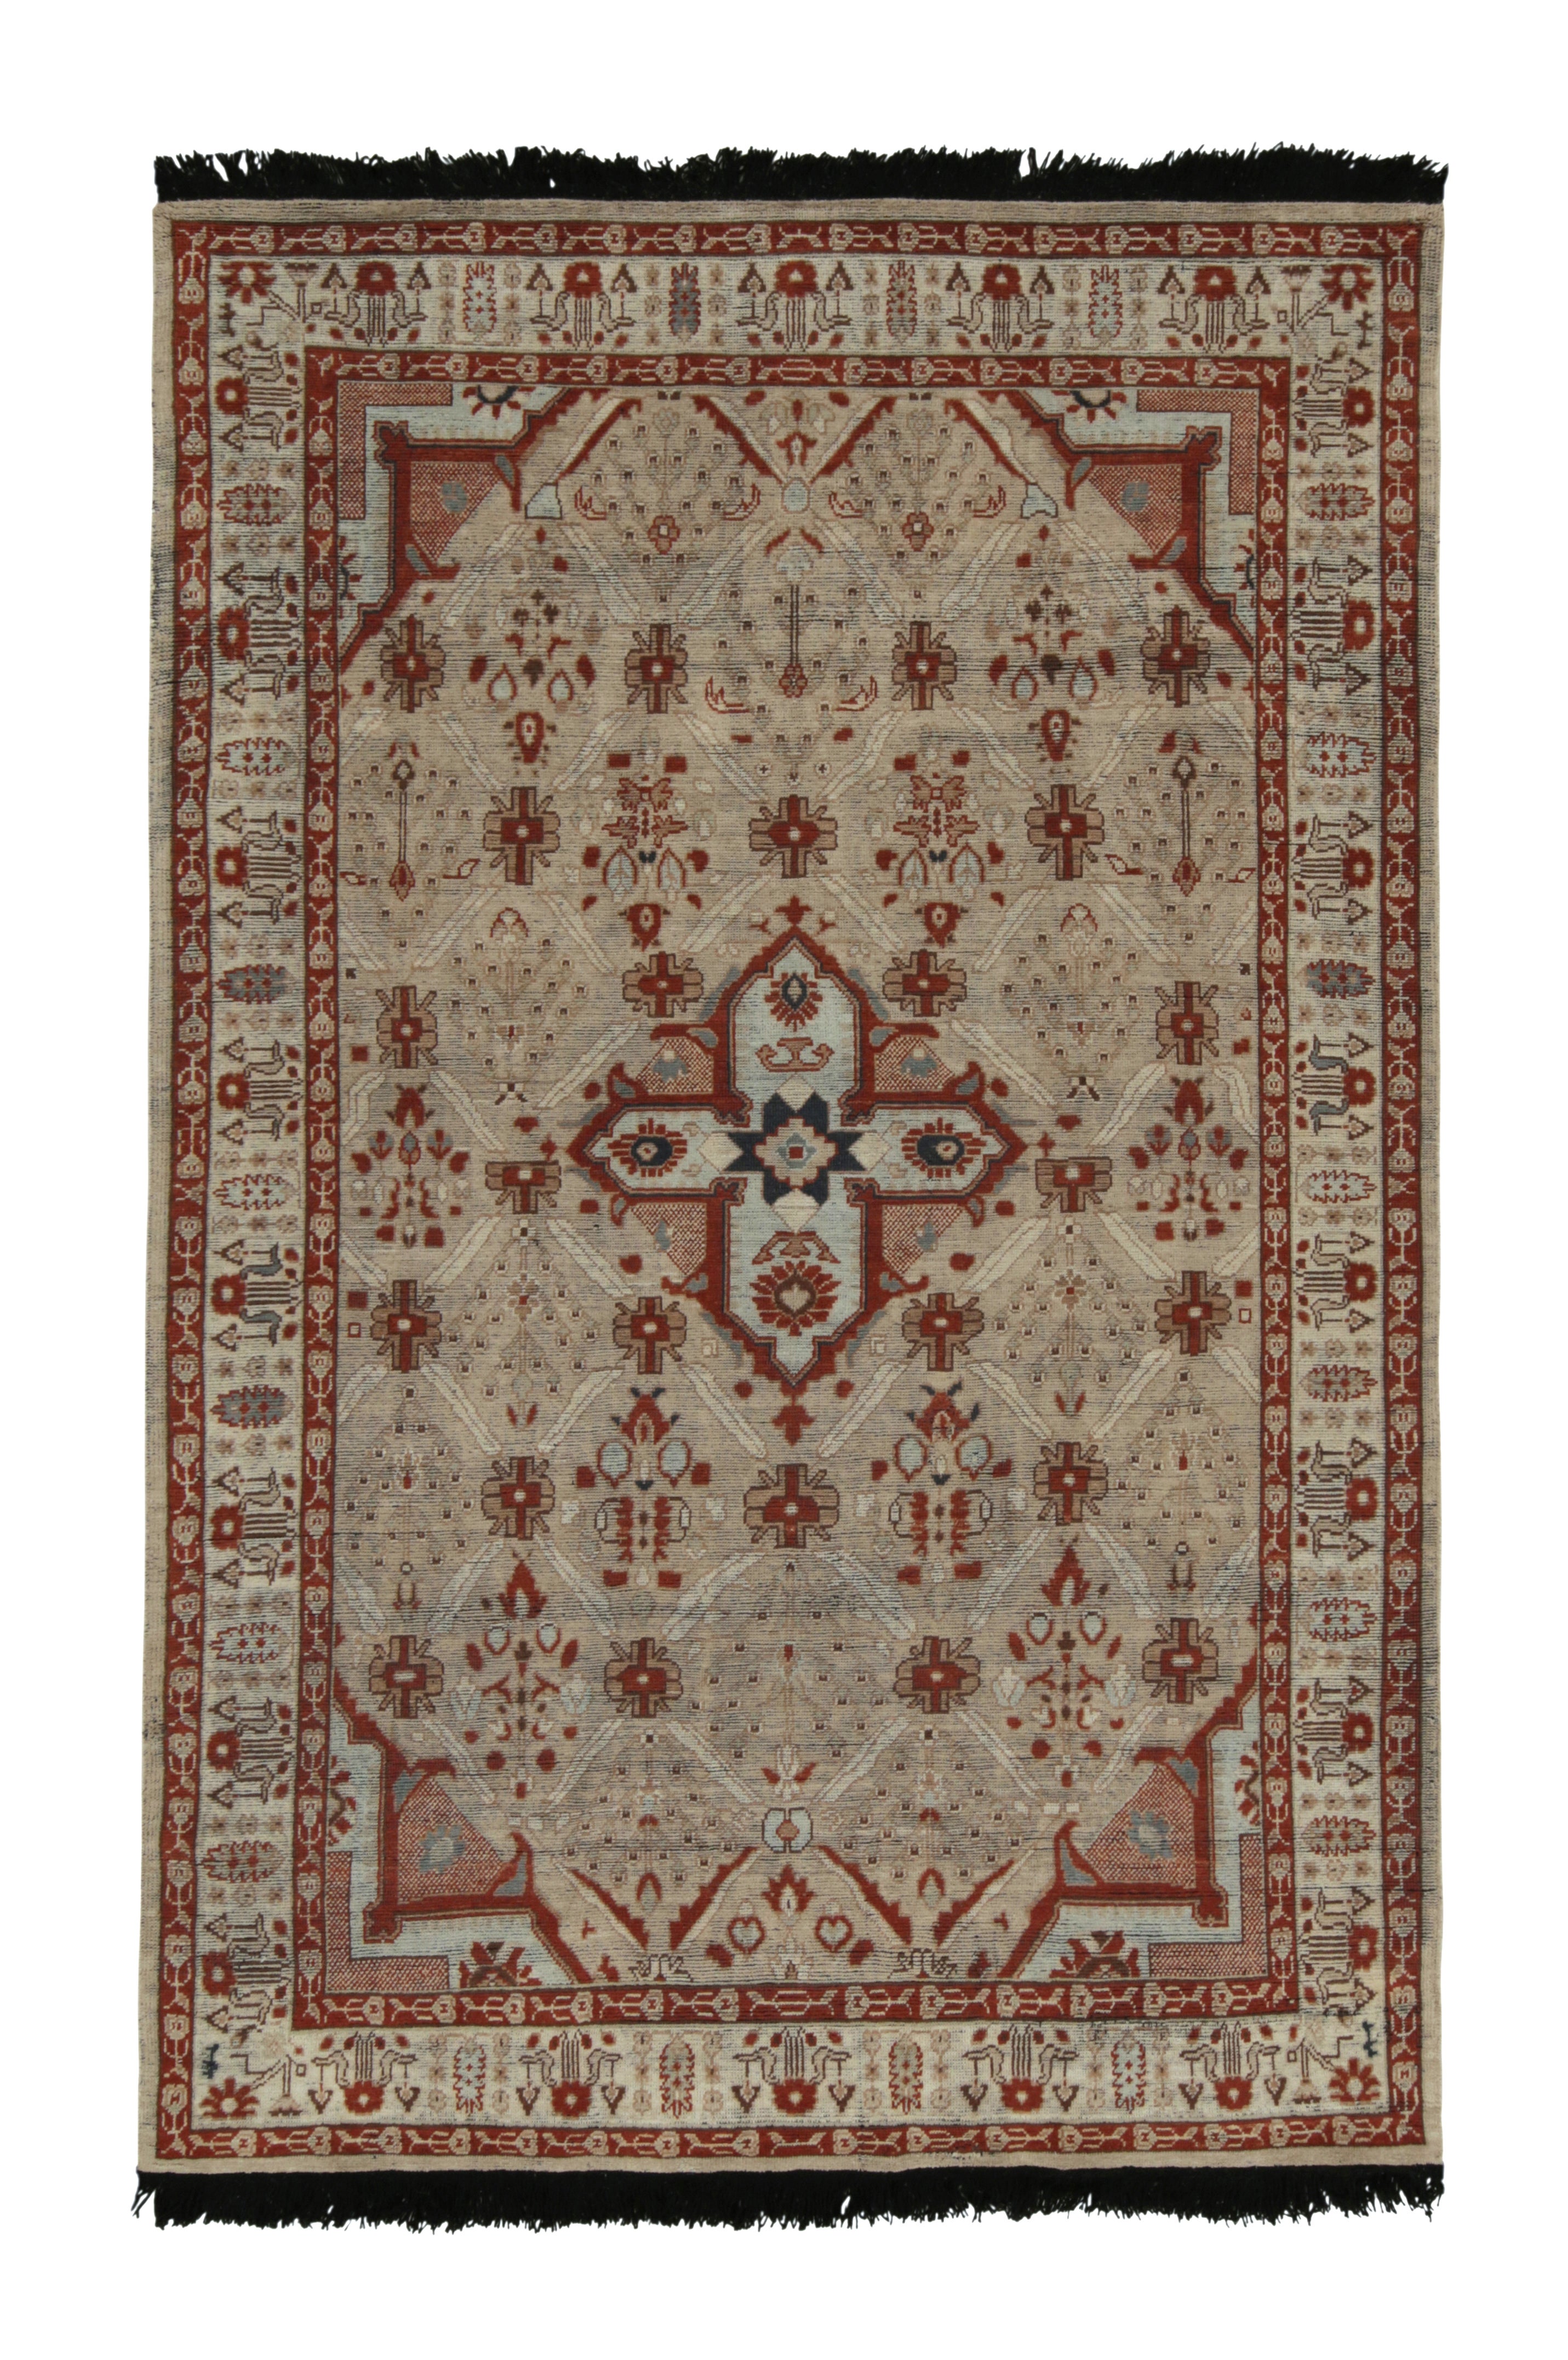 Teppich im Stammes- und Kelim-Stil mit grauen, roten und braunen geometrischen Mustern